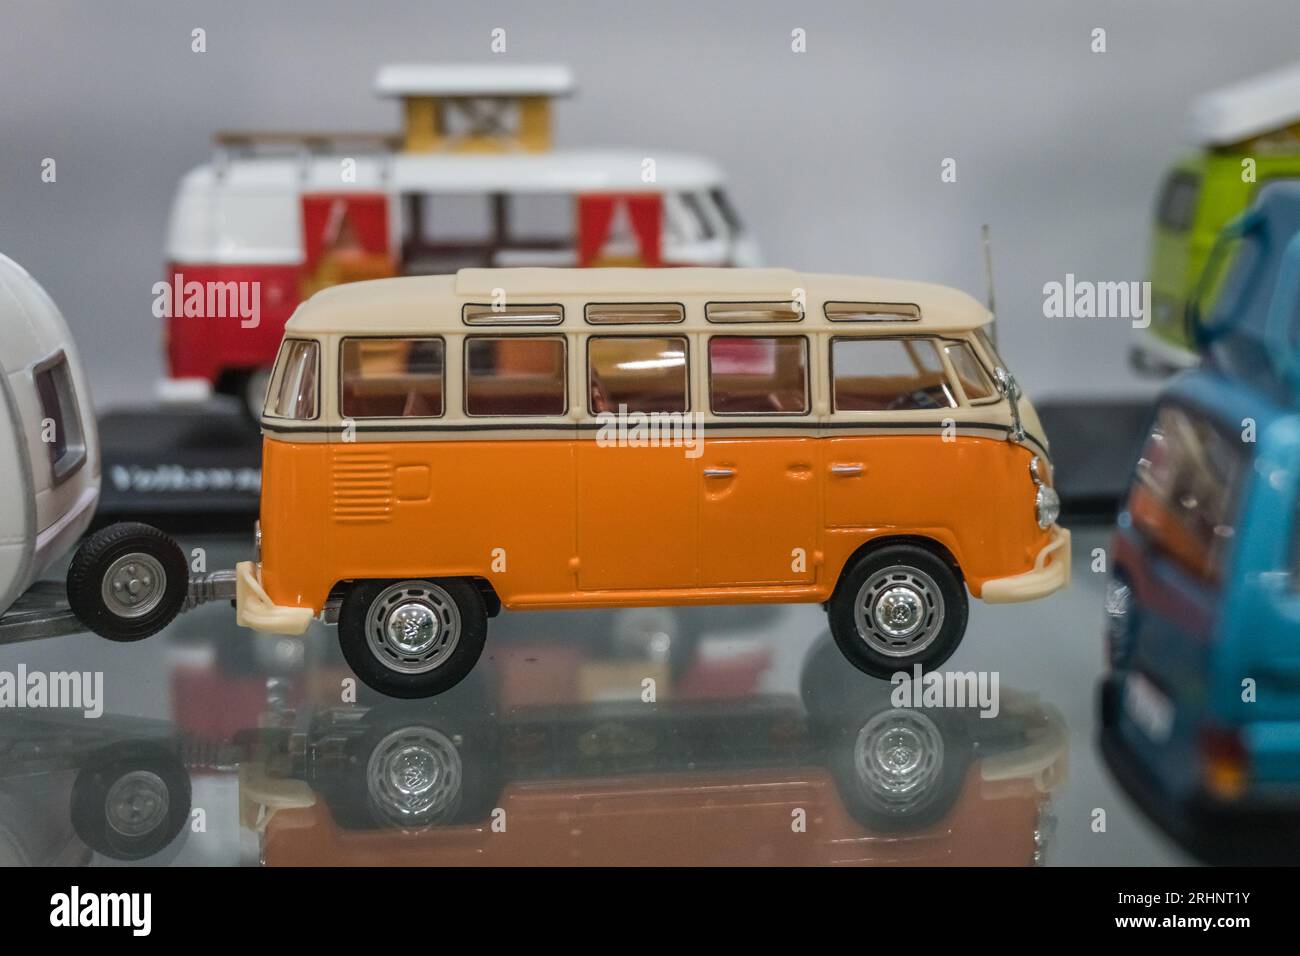 Toy orange Volkswagen van on display, Stock Photo